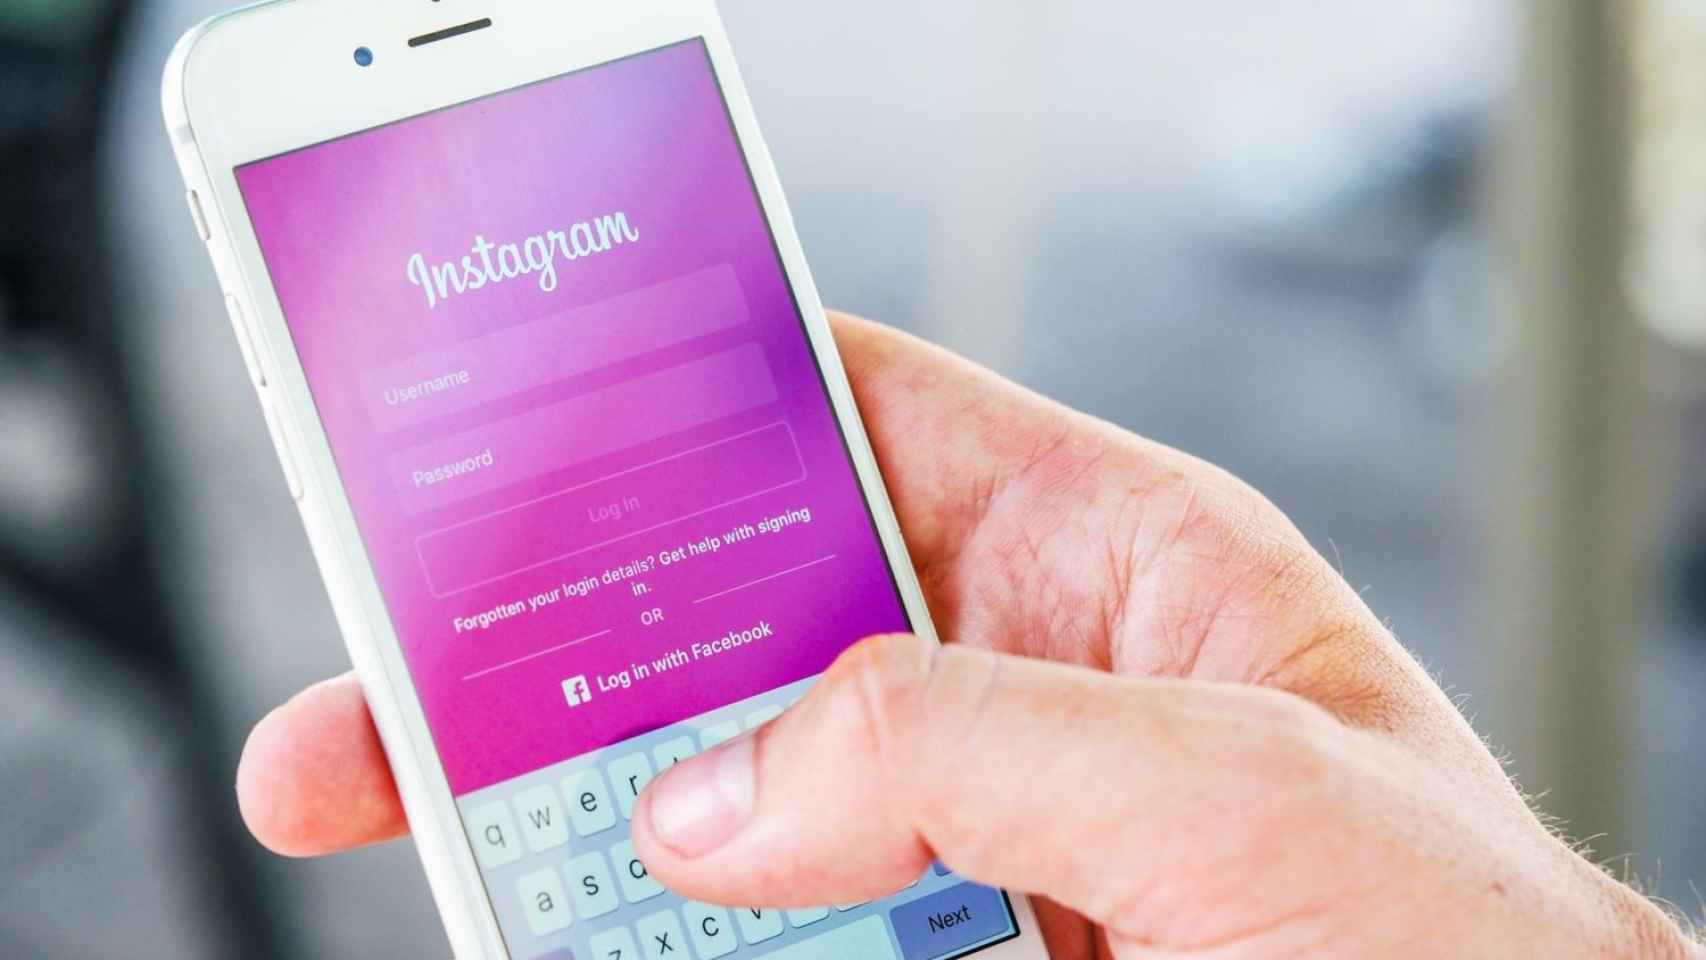 Instagram copia la interfaz de Tinder